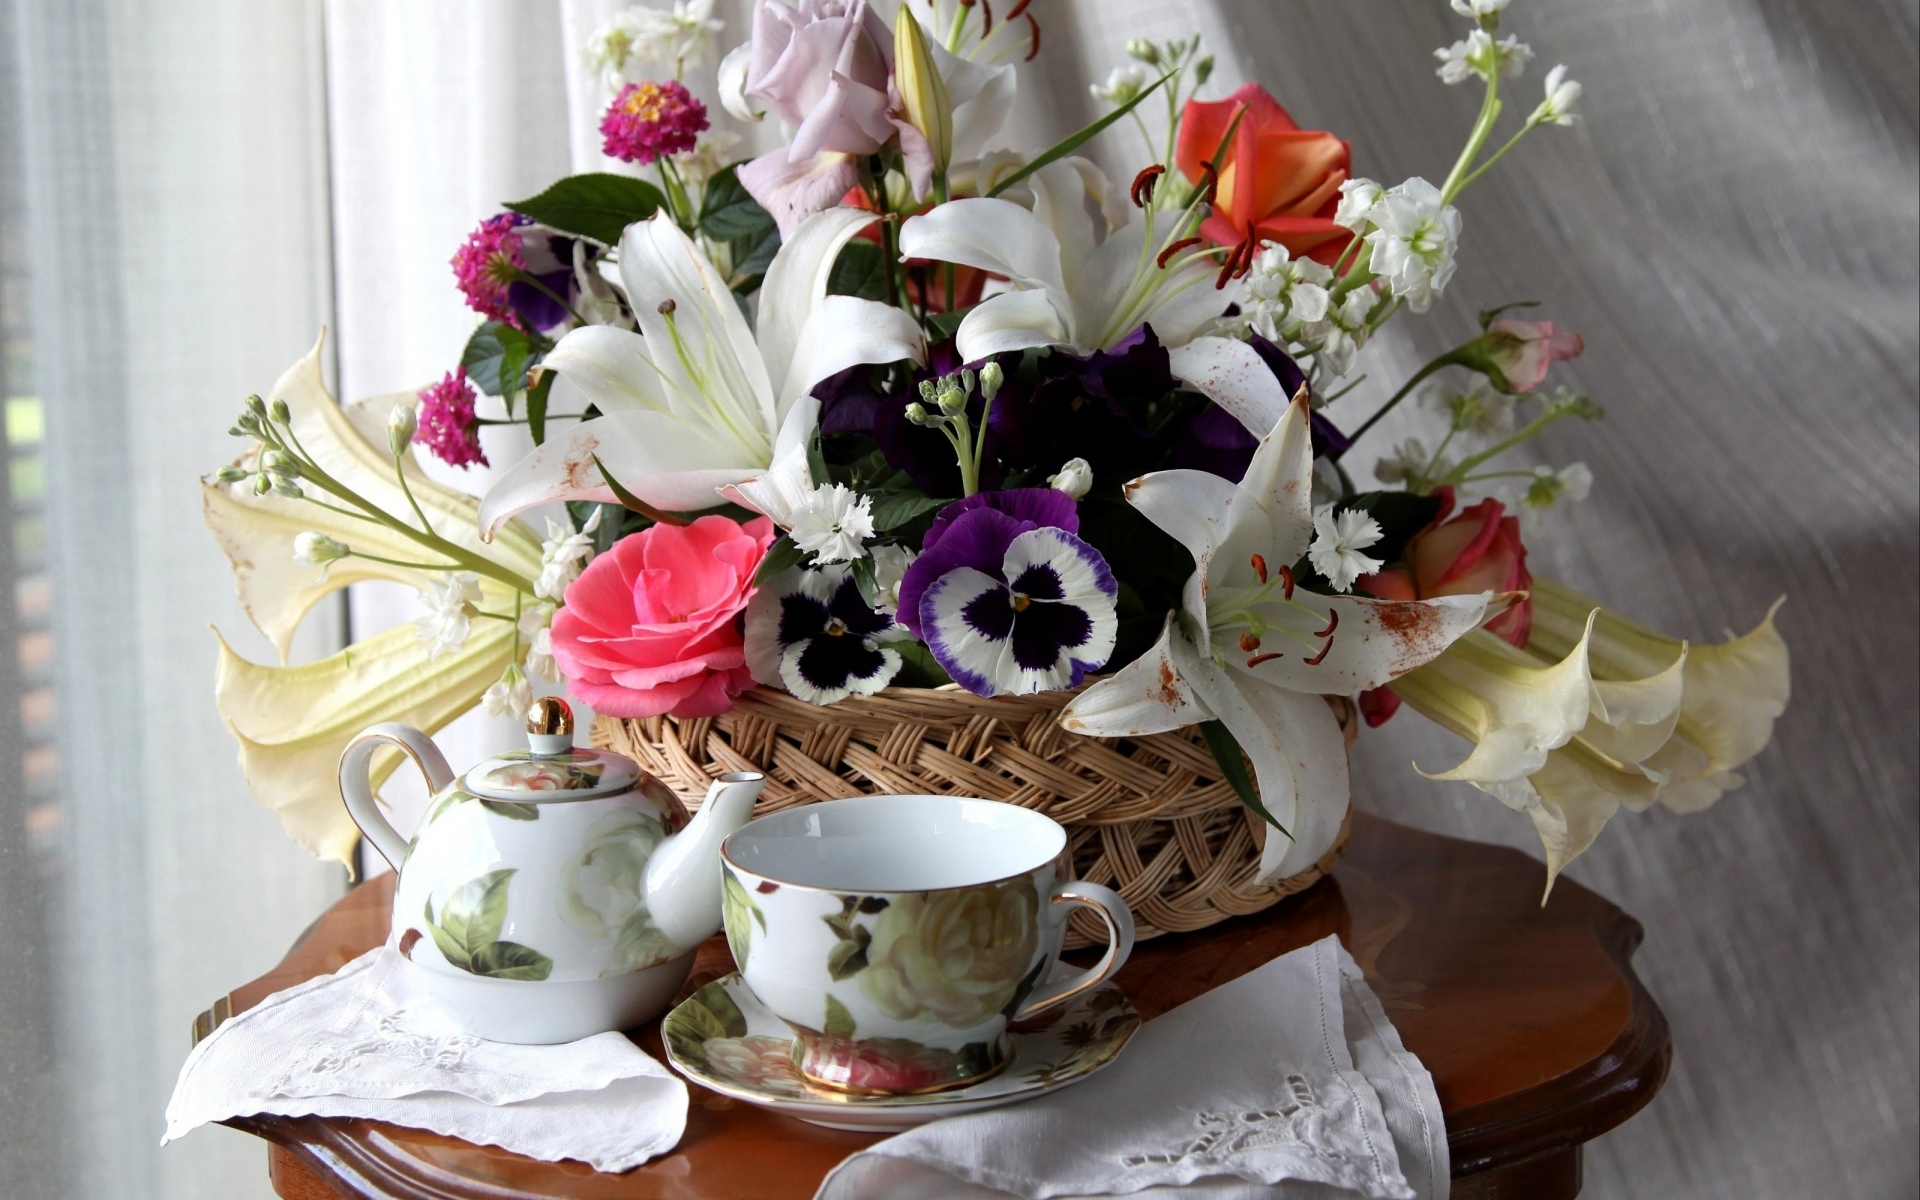 Картинки Розы, лилии, анютины глазки, цветок, корзина, стол, чай фото и обои на рабочий стол